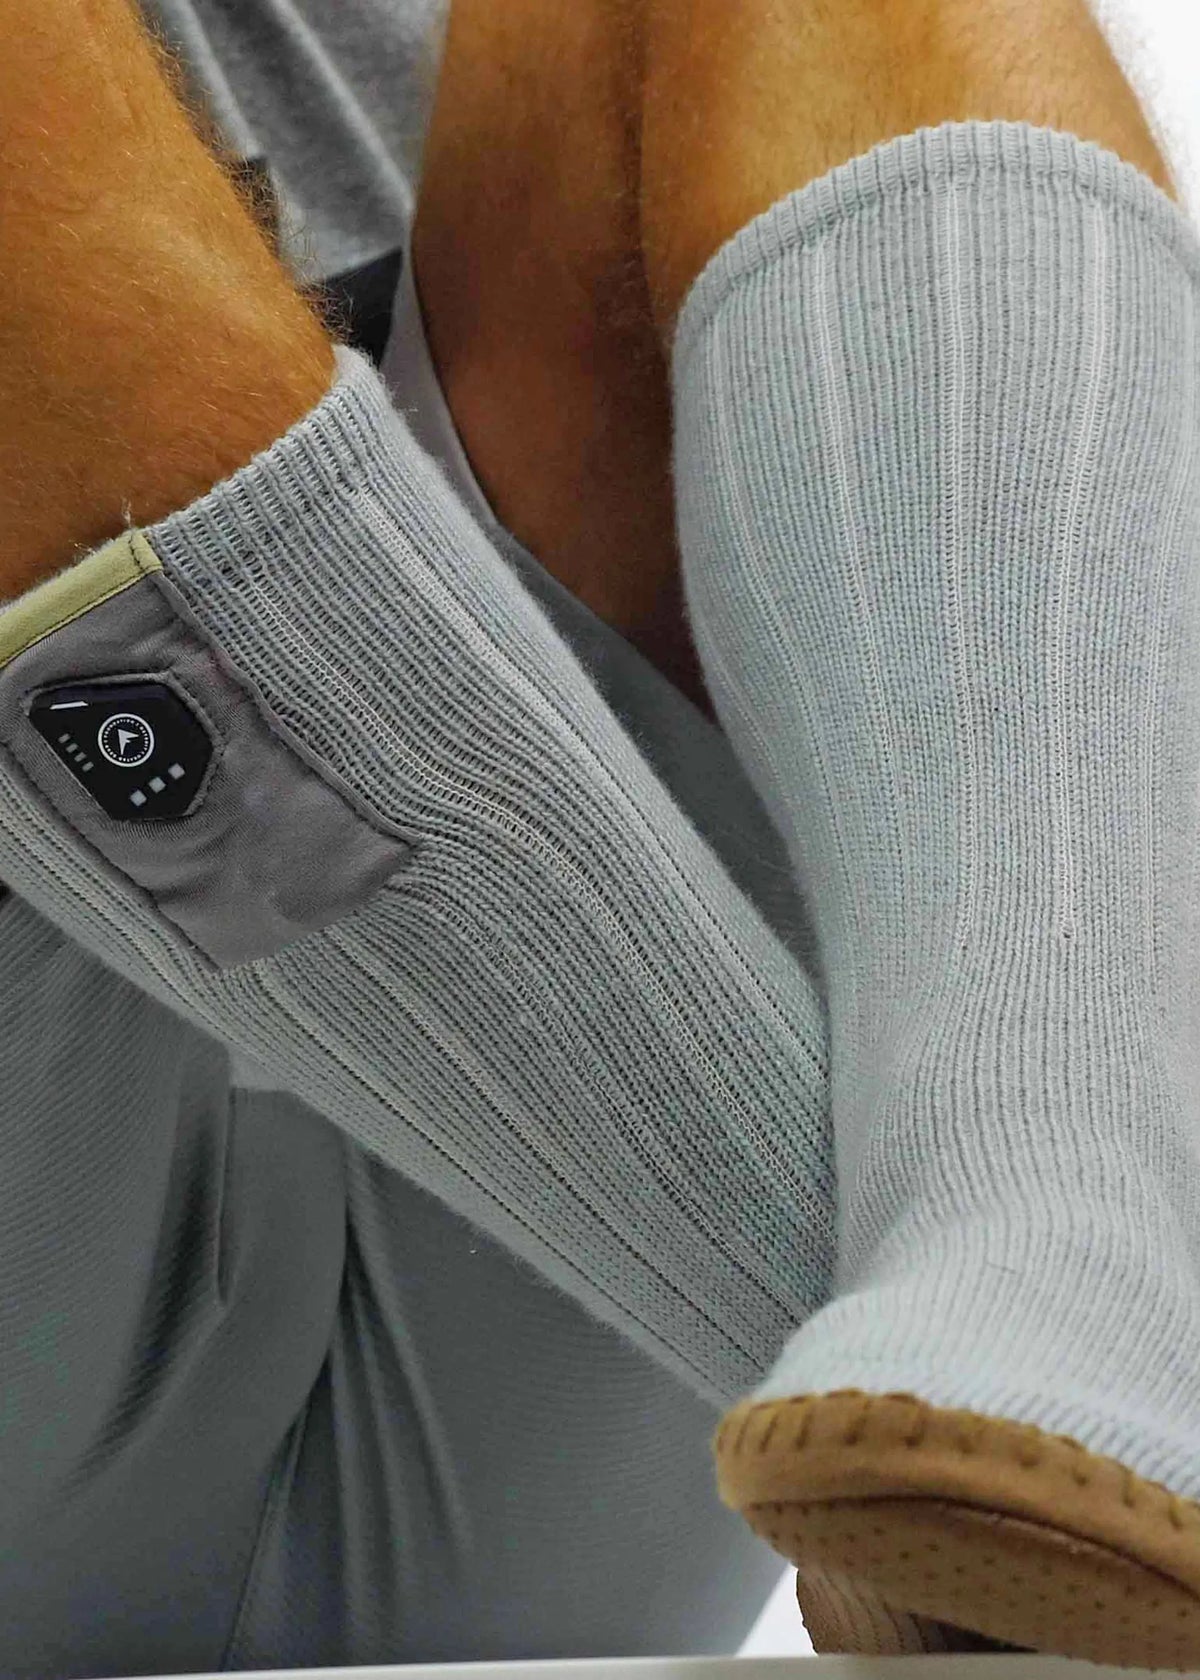 FNDN Heated 3.7V Slipper Socks